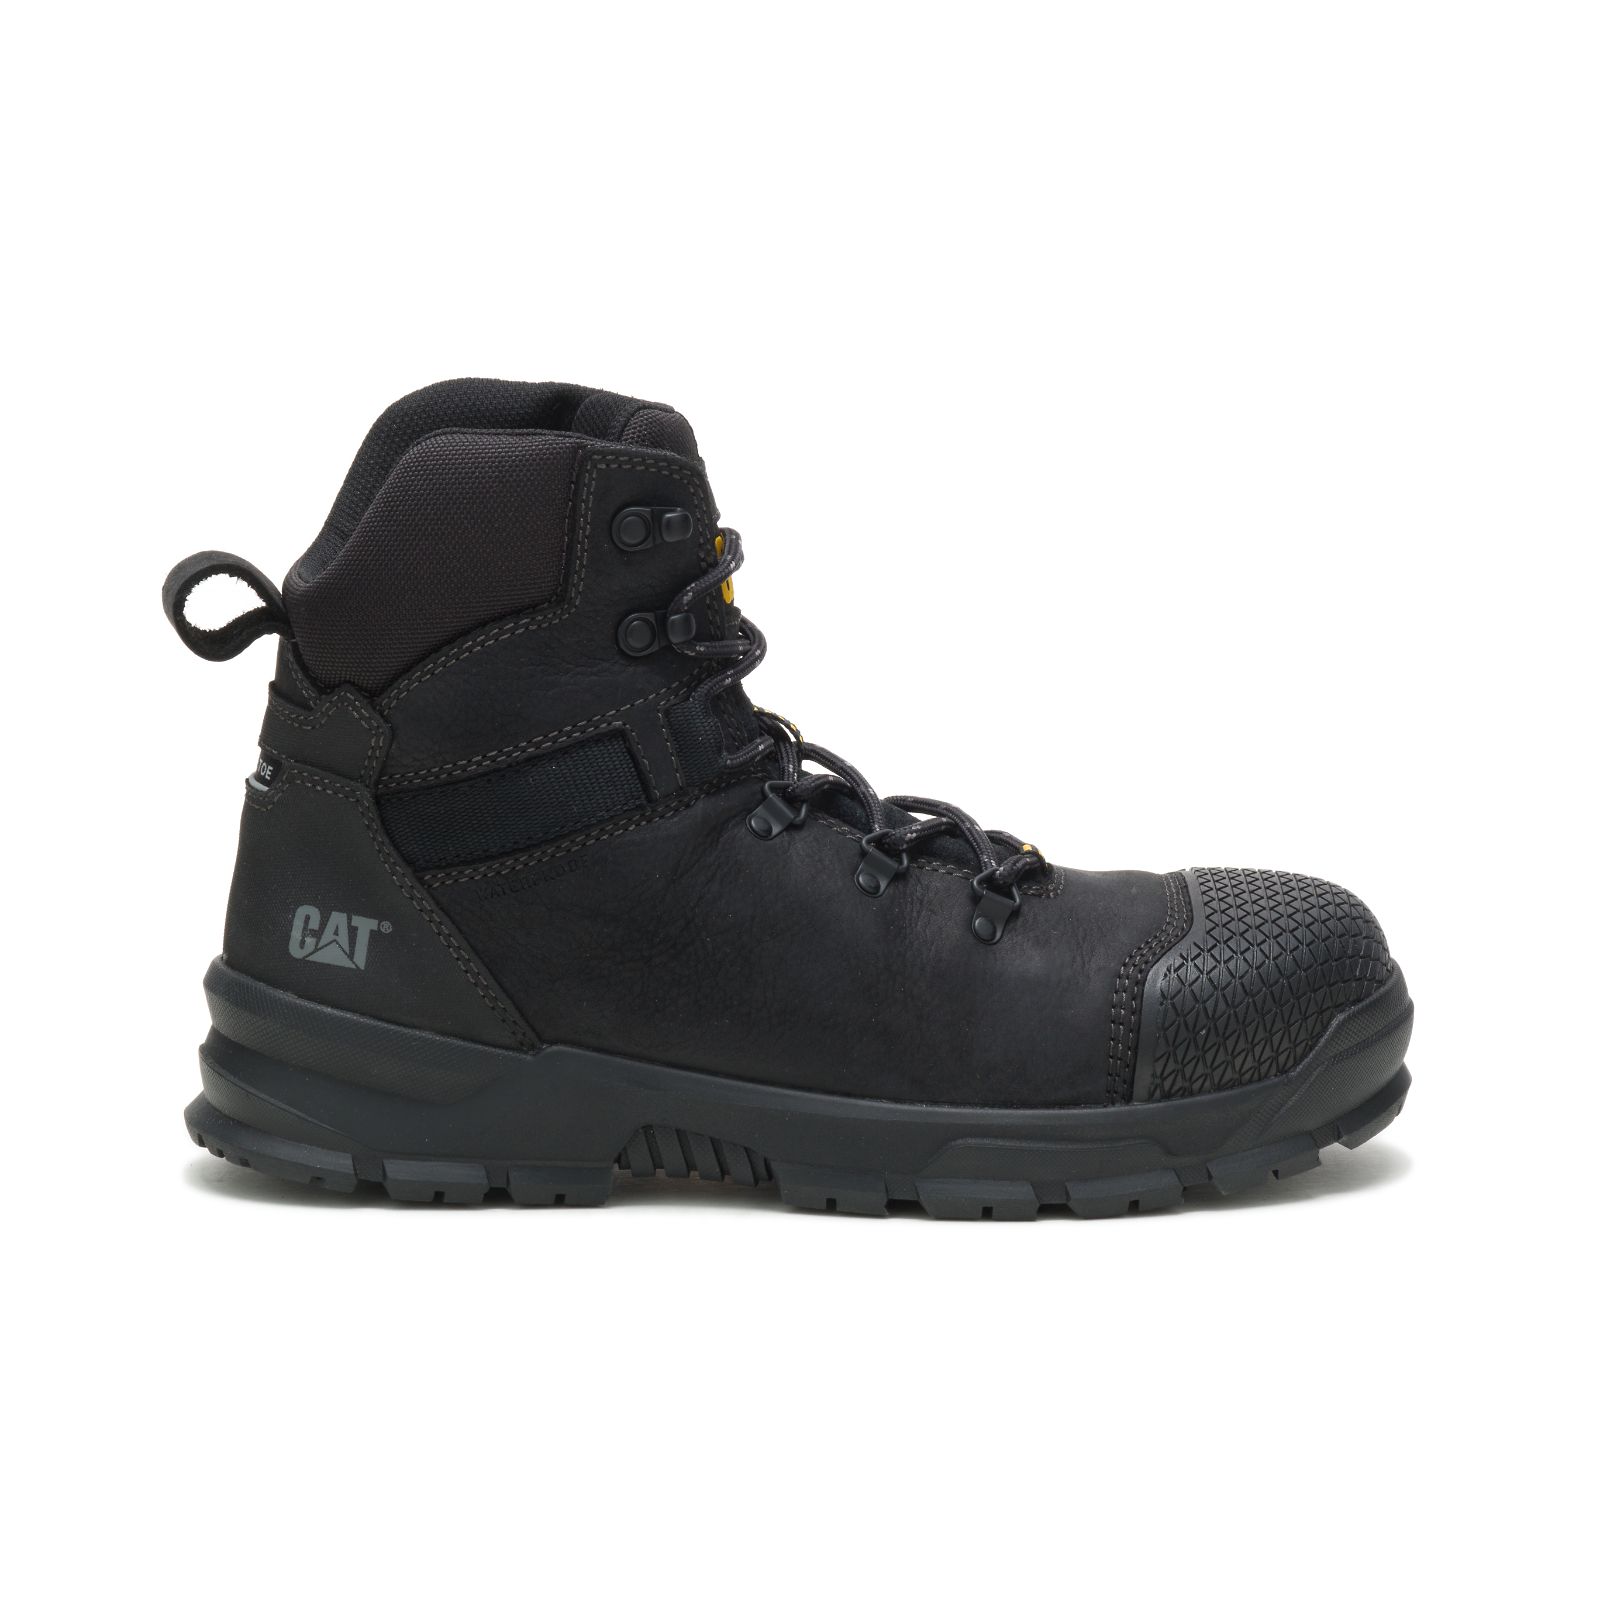 Caterpillar Accomplice X Waterproof Steel Toe - Mens Steel Toe Boots - Black - NZ (548NJKBCF)